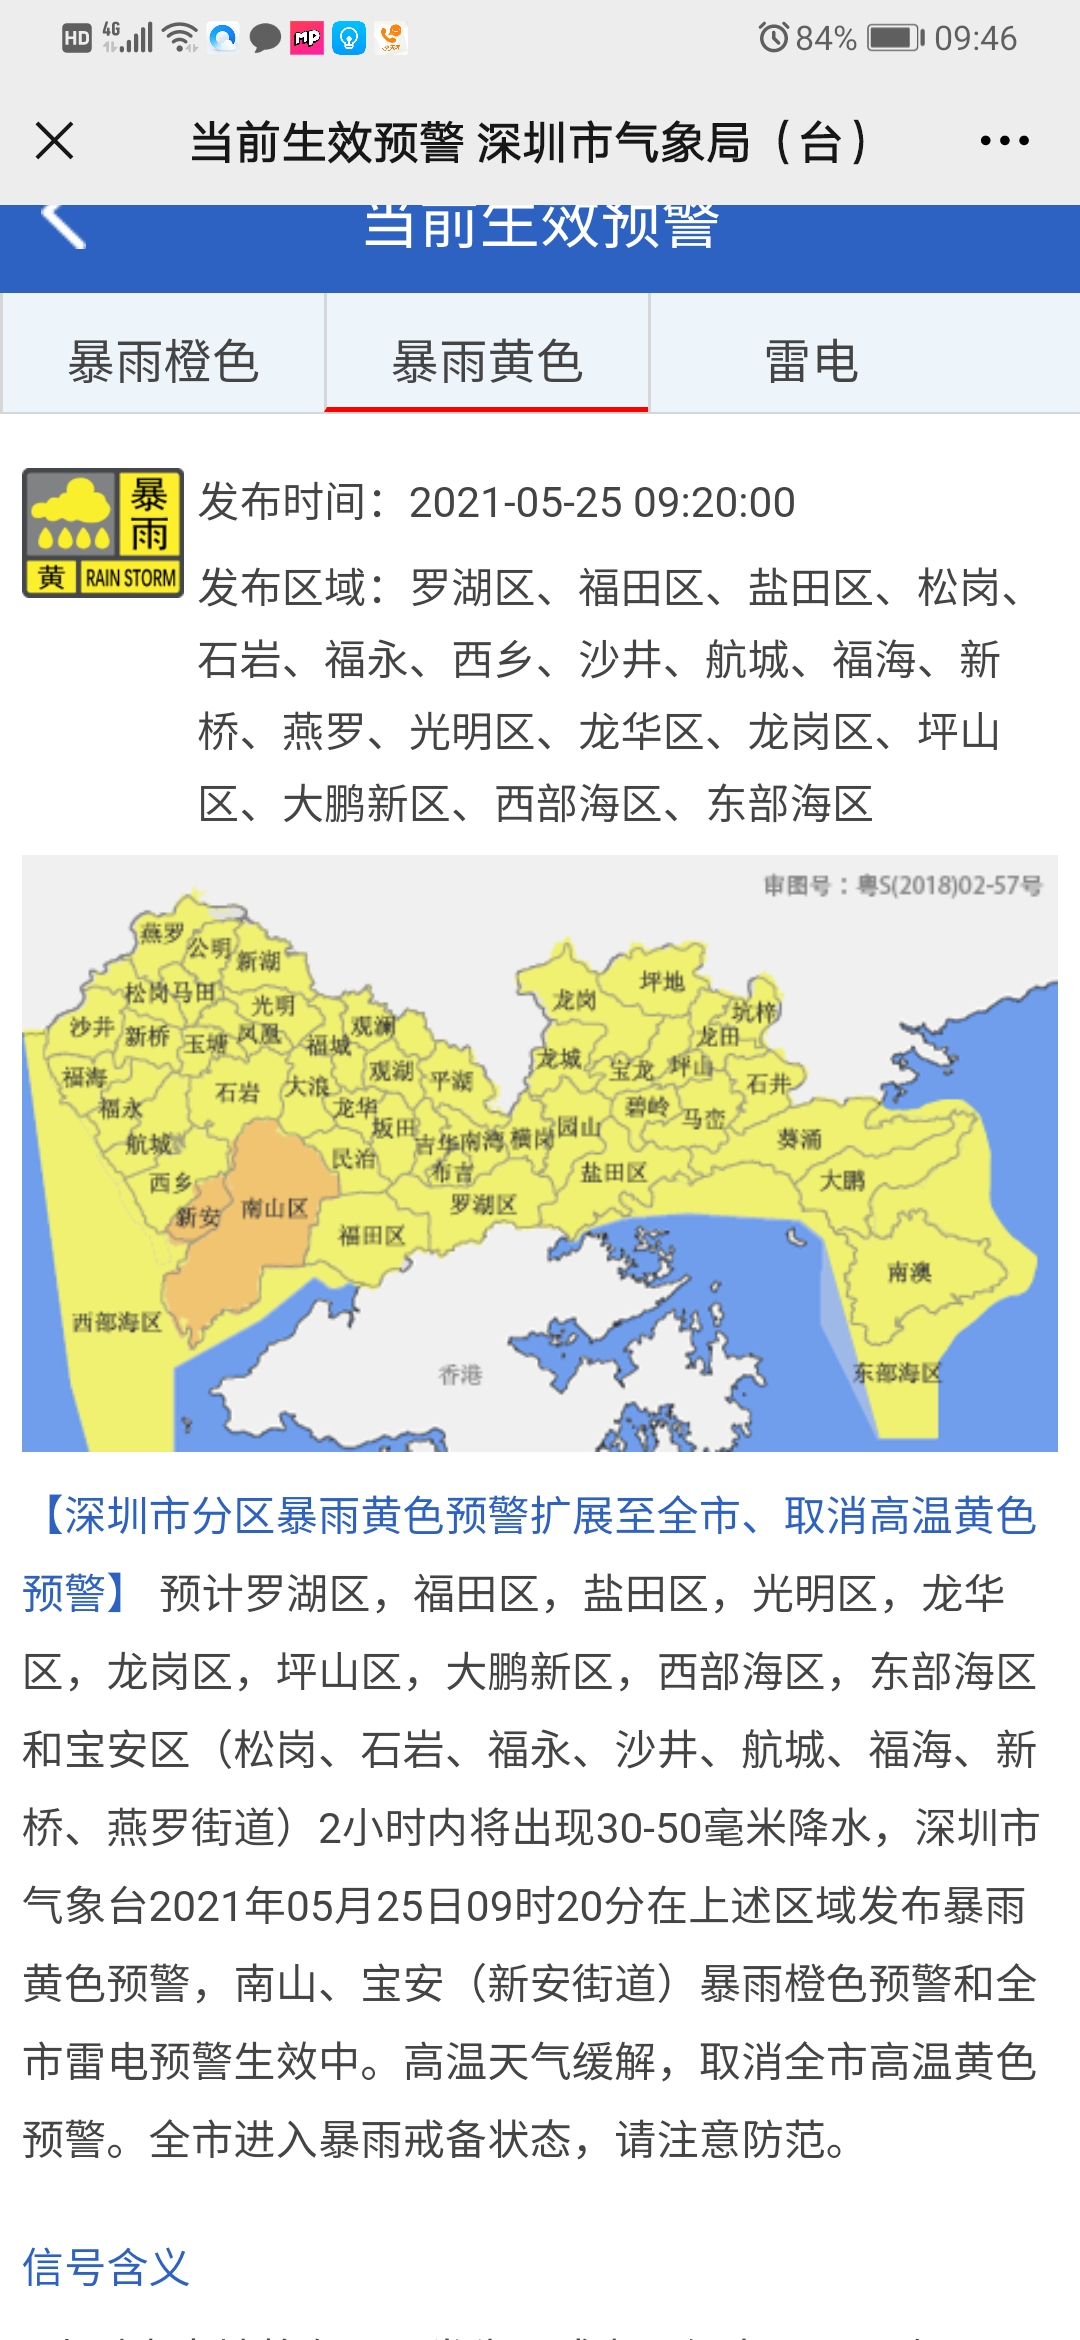 深圳全市区域发布暴雨黄色预警 雷电预警生效中